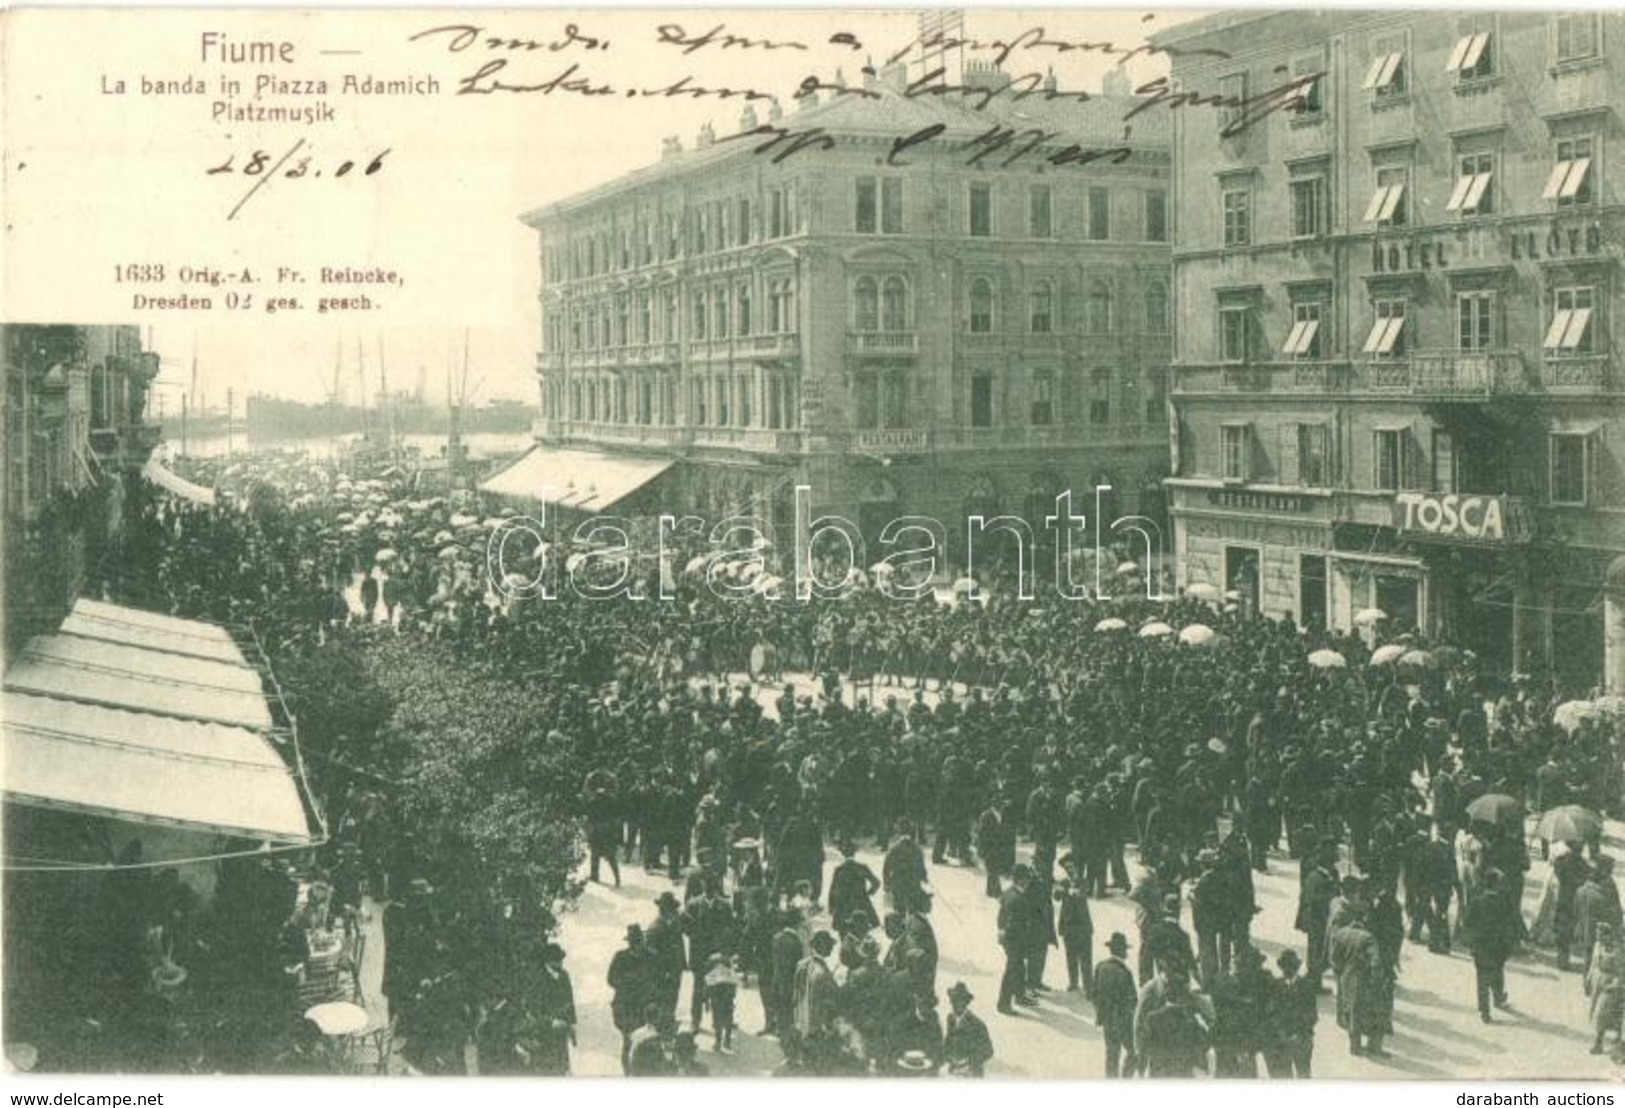 T2/T3 1906 Fiume, Rijeka; La Banda In Piazza Adamich / Platzmusik / Music Band's Concert At The Square, Street Festival, - Non Classés